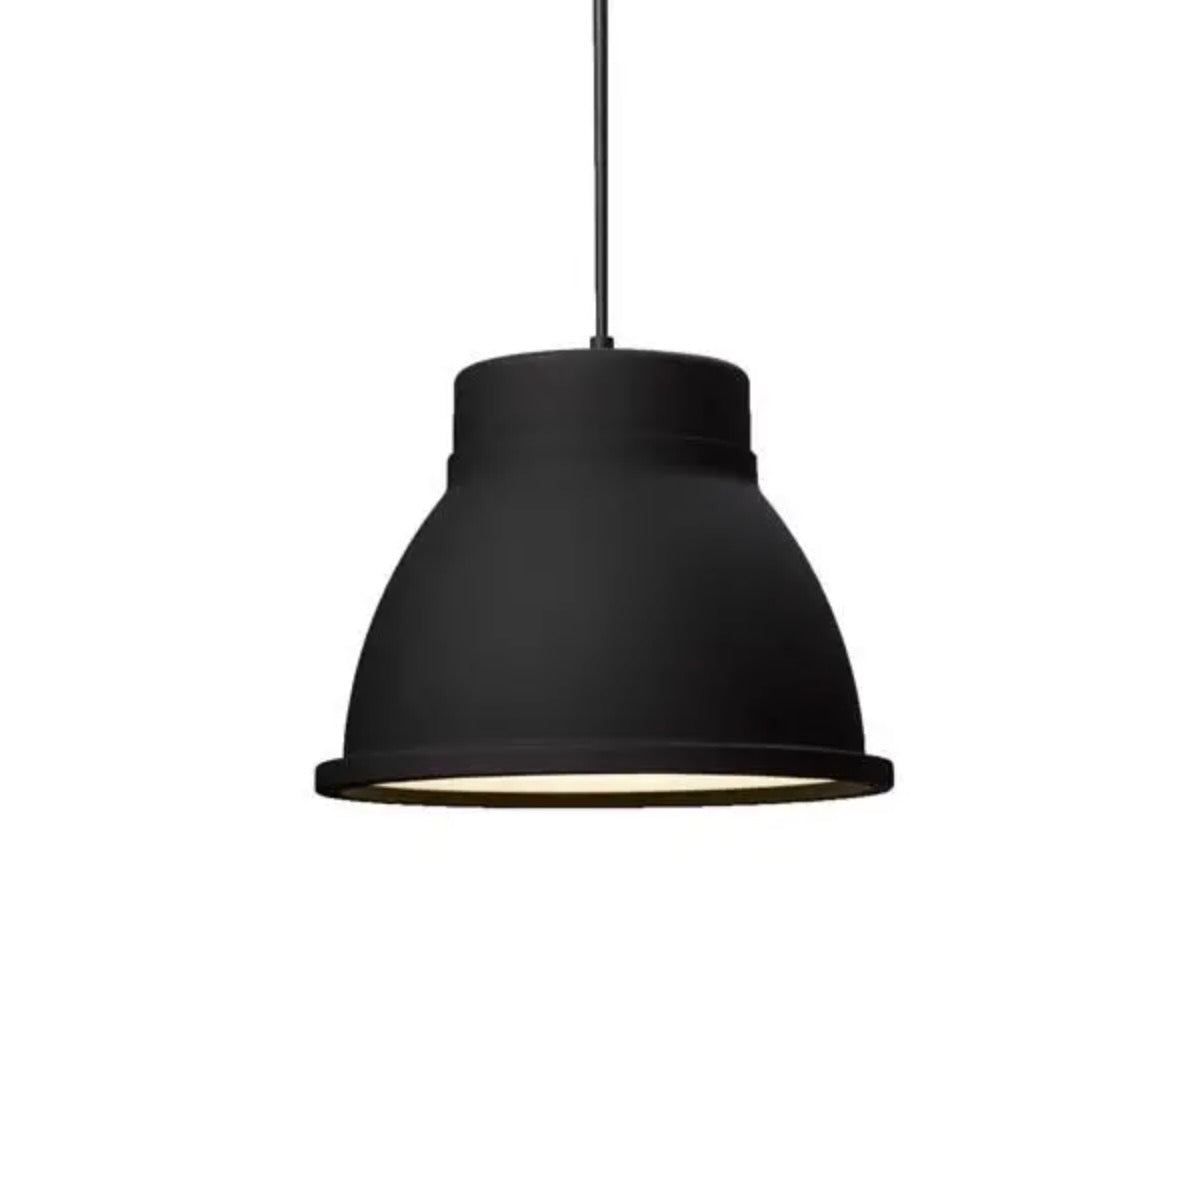 Muuto | Studio Pendant Lamp in Black